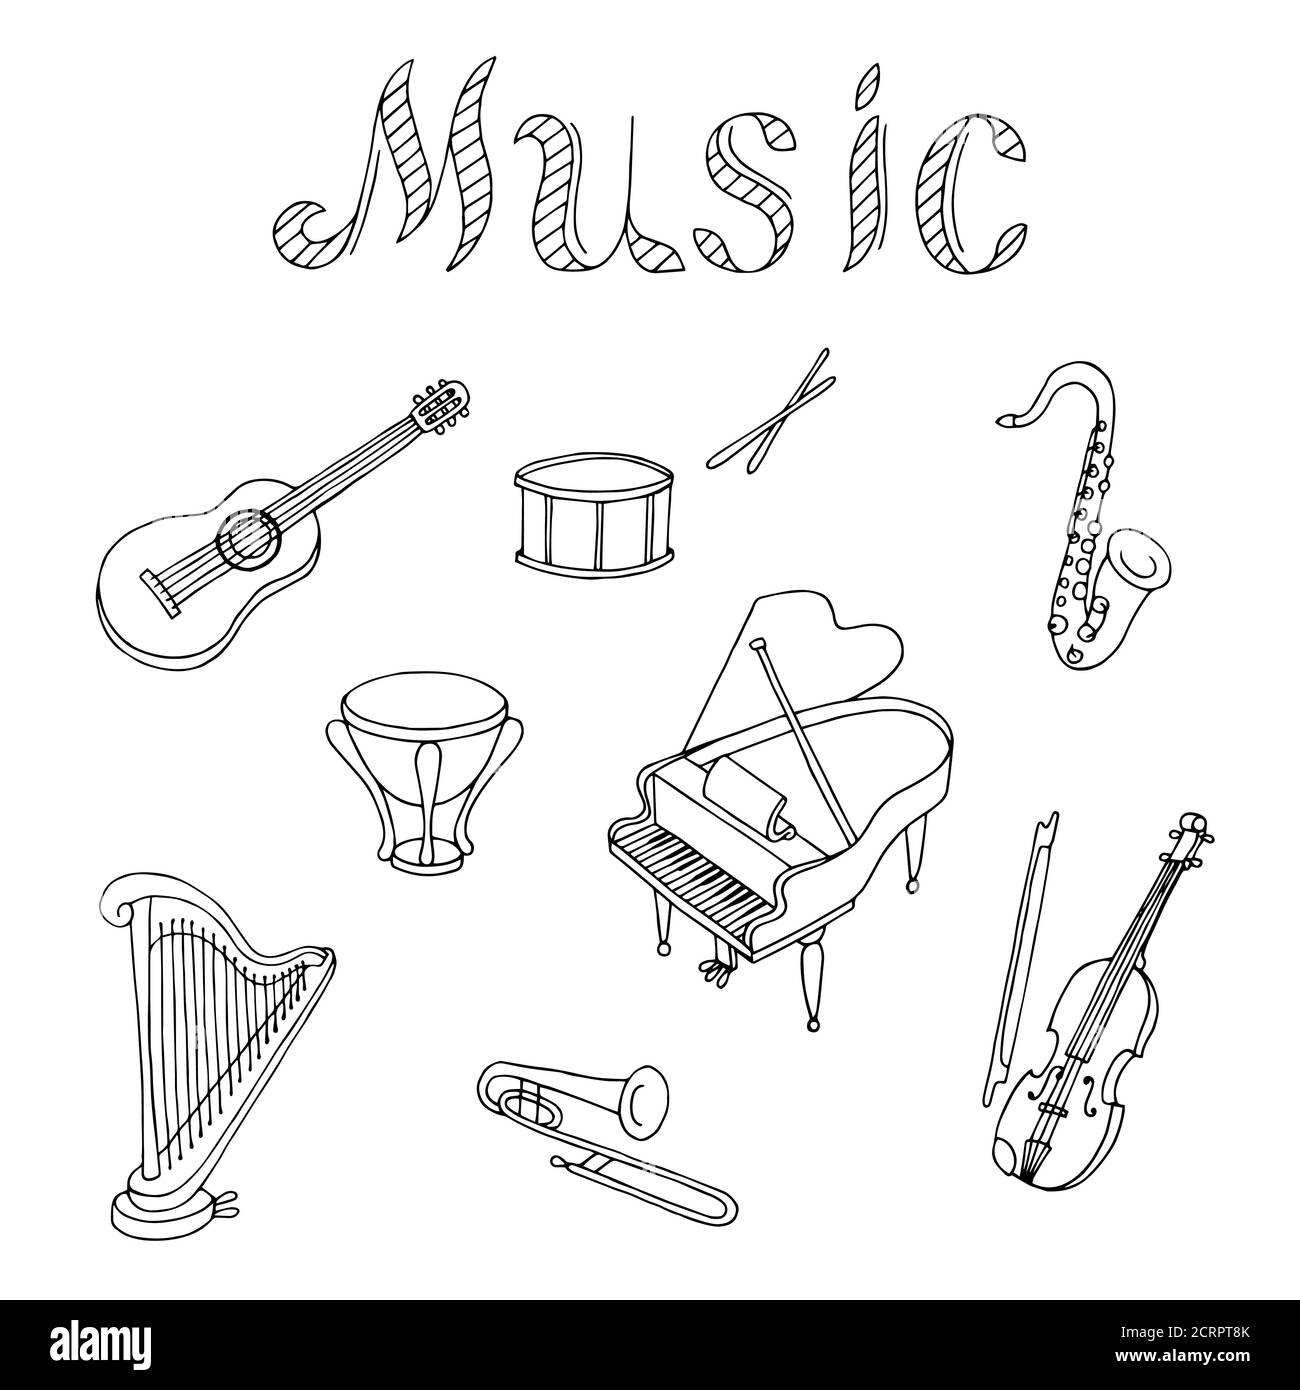 Insieme di strumenti musicali grafico art bianco nero vettore di illustrazione isolato Illustrazione Vettoriale